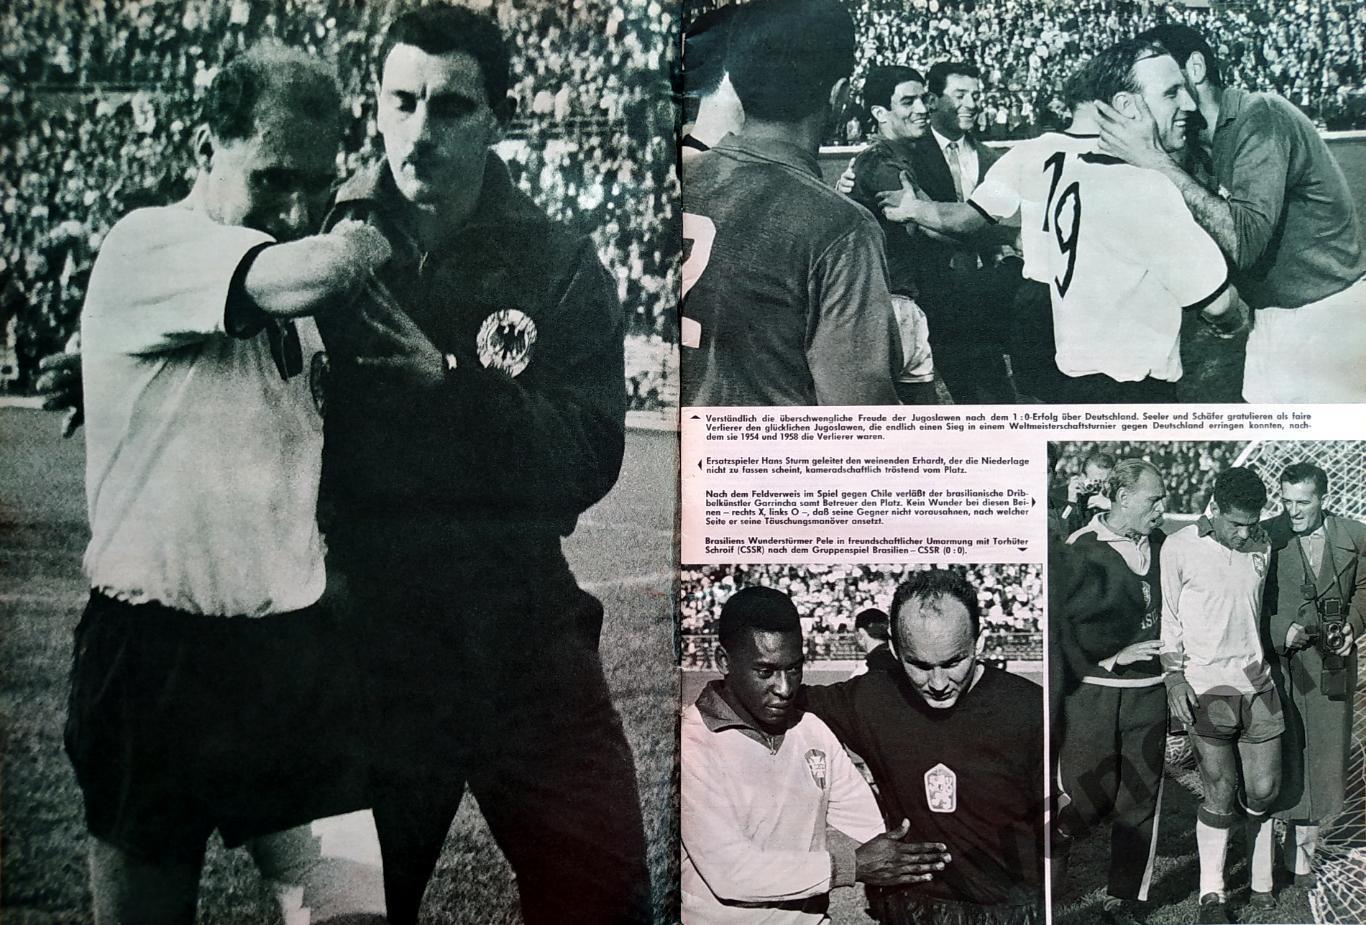 FUSSBALL-1962 Weltmeisterschaft / Чемпионат Мира по футболу в Чили 1962 года. 1